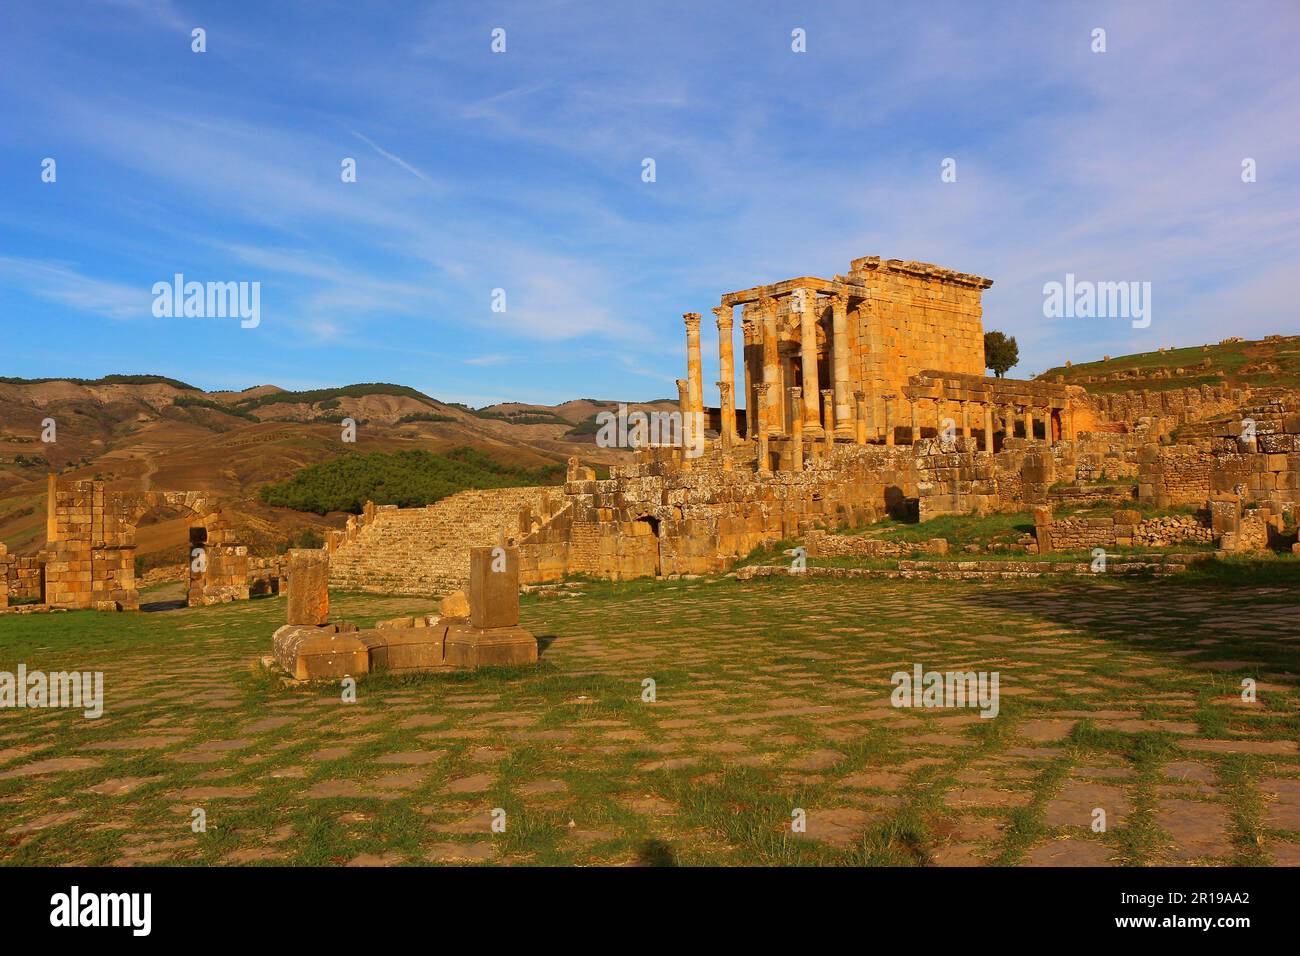 Ruines romaines de Djemila, Algérie. Le temple de Septimus Severus dans la soirée. Banque D'Images